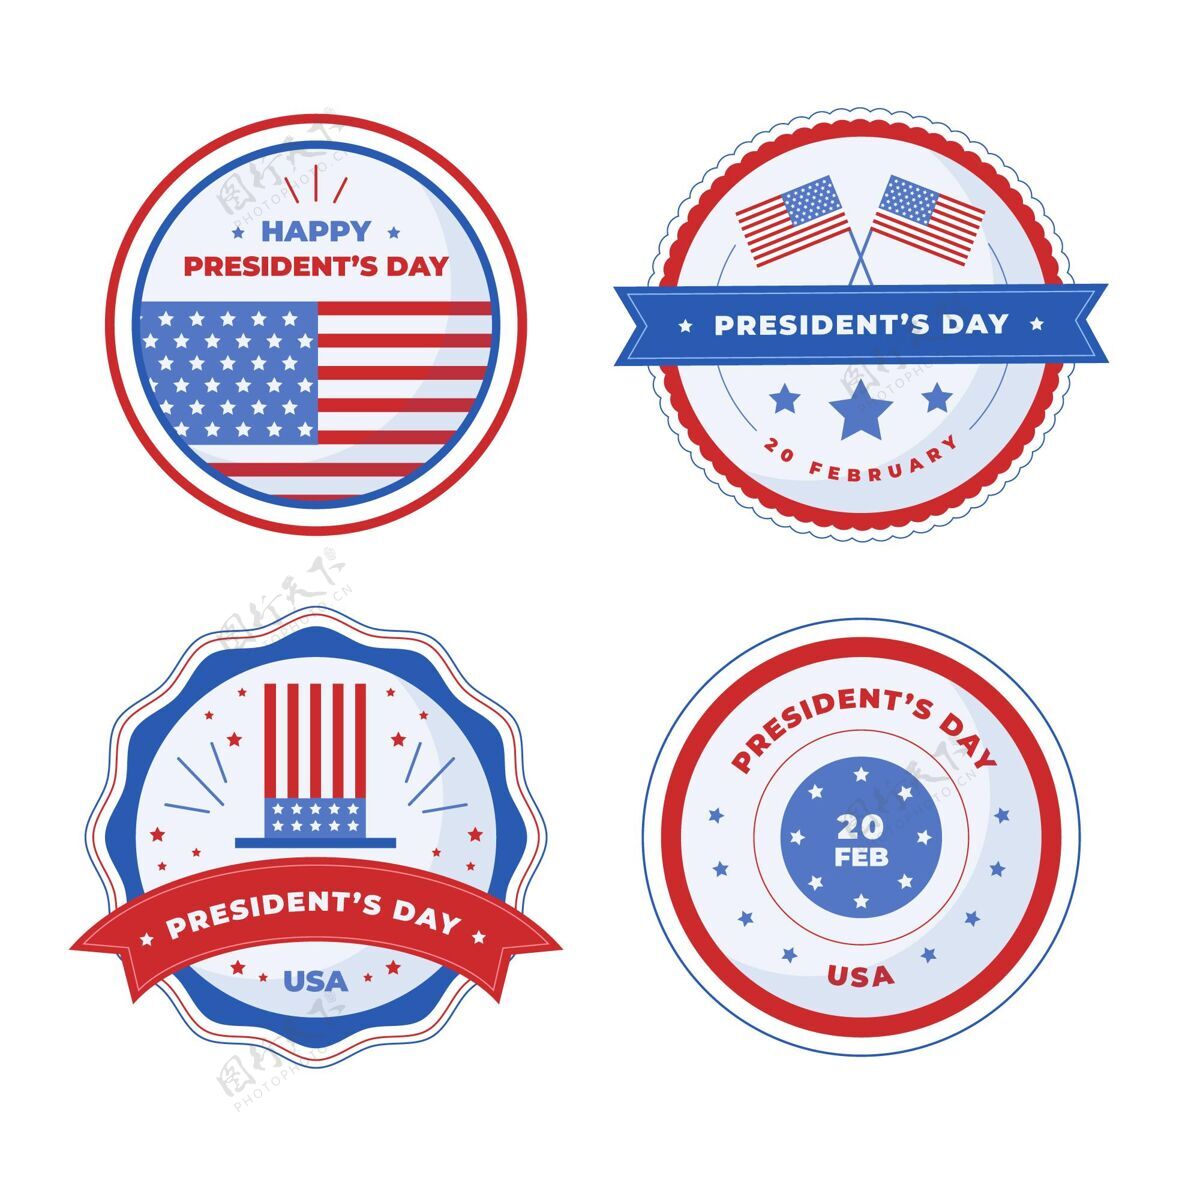 民主总统日活动徽章套装爱国主义庆祝国家